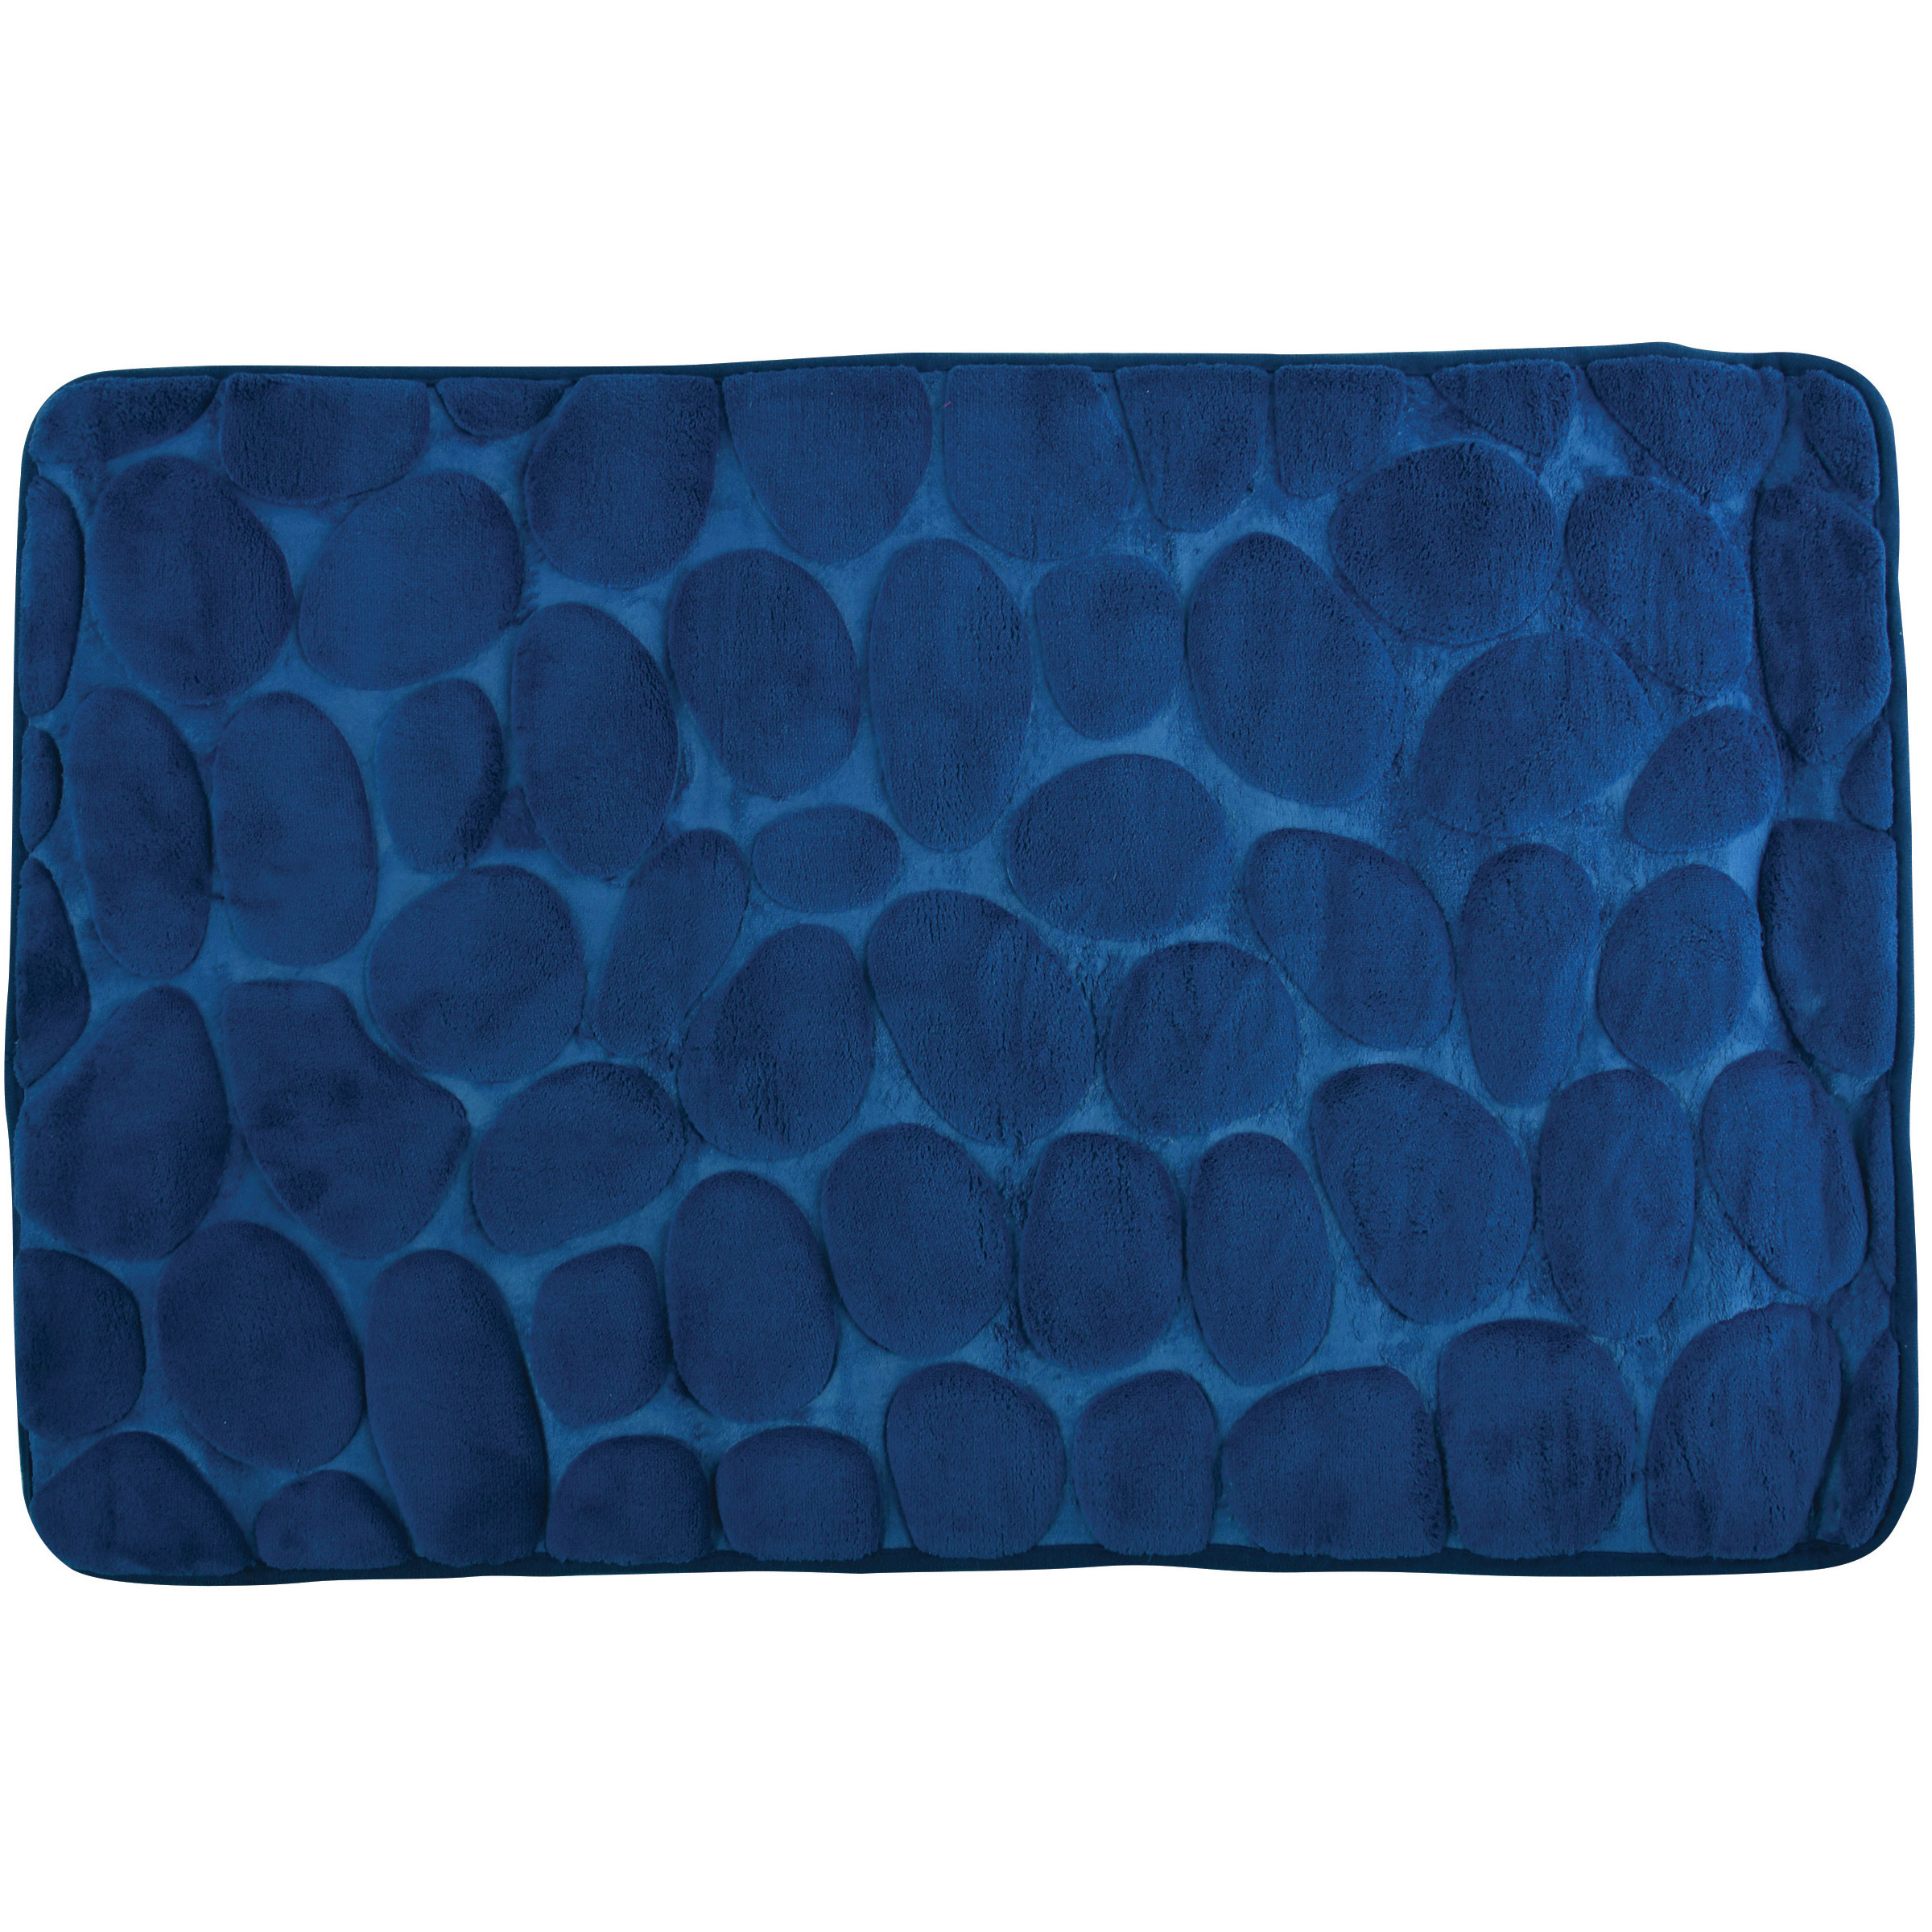 Badkamerkleedje-badmat tapijt kiezel motief vloermat marine blauw 50 x 80 cm laagpolig